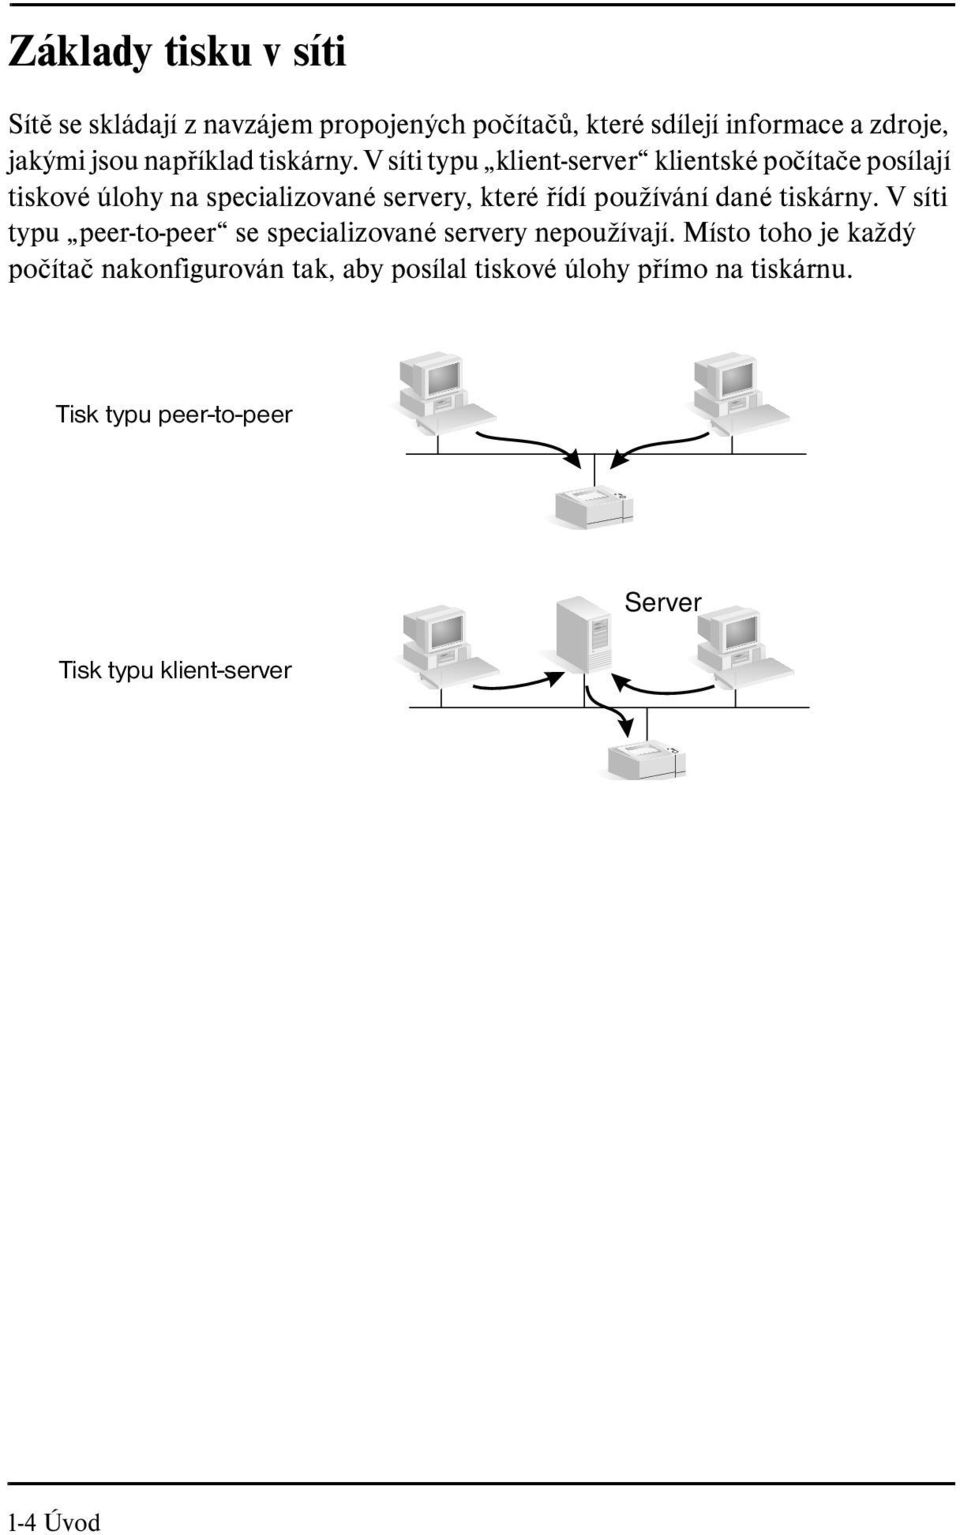 V síti typu klient-server klientské počítače posílají tiskové úlohy na specializované servery, které řídí používání dané